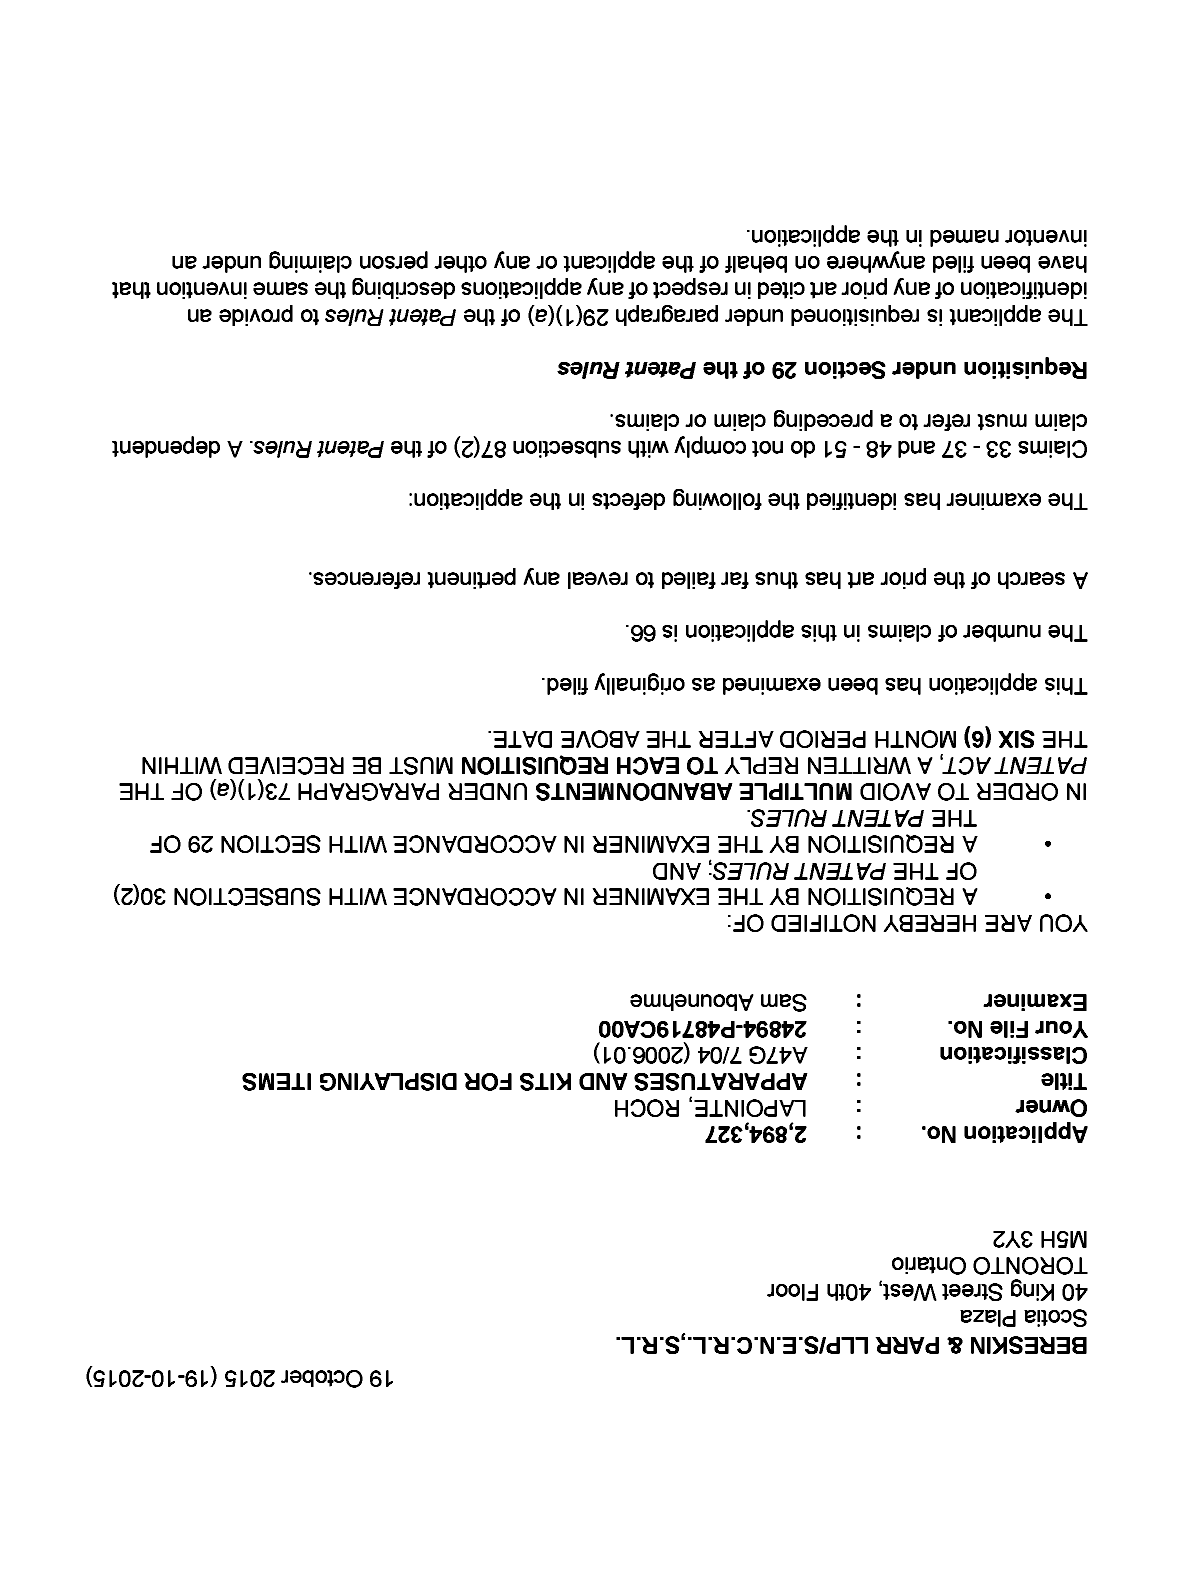 Document de brevet canadien 2894327. Poursuite-Amendment 20141219. Image 1 de 3